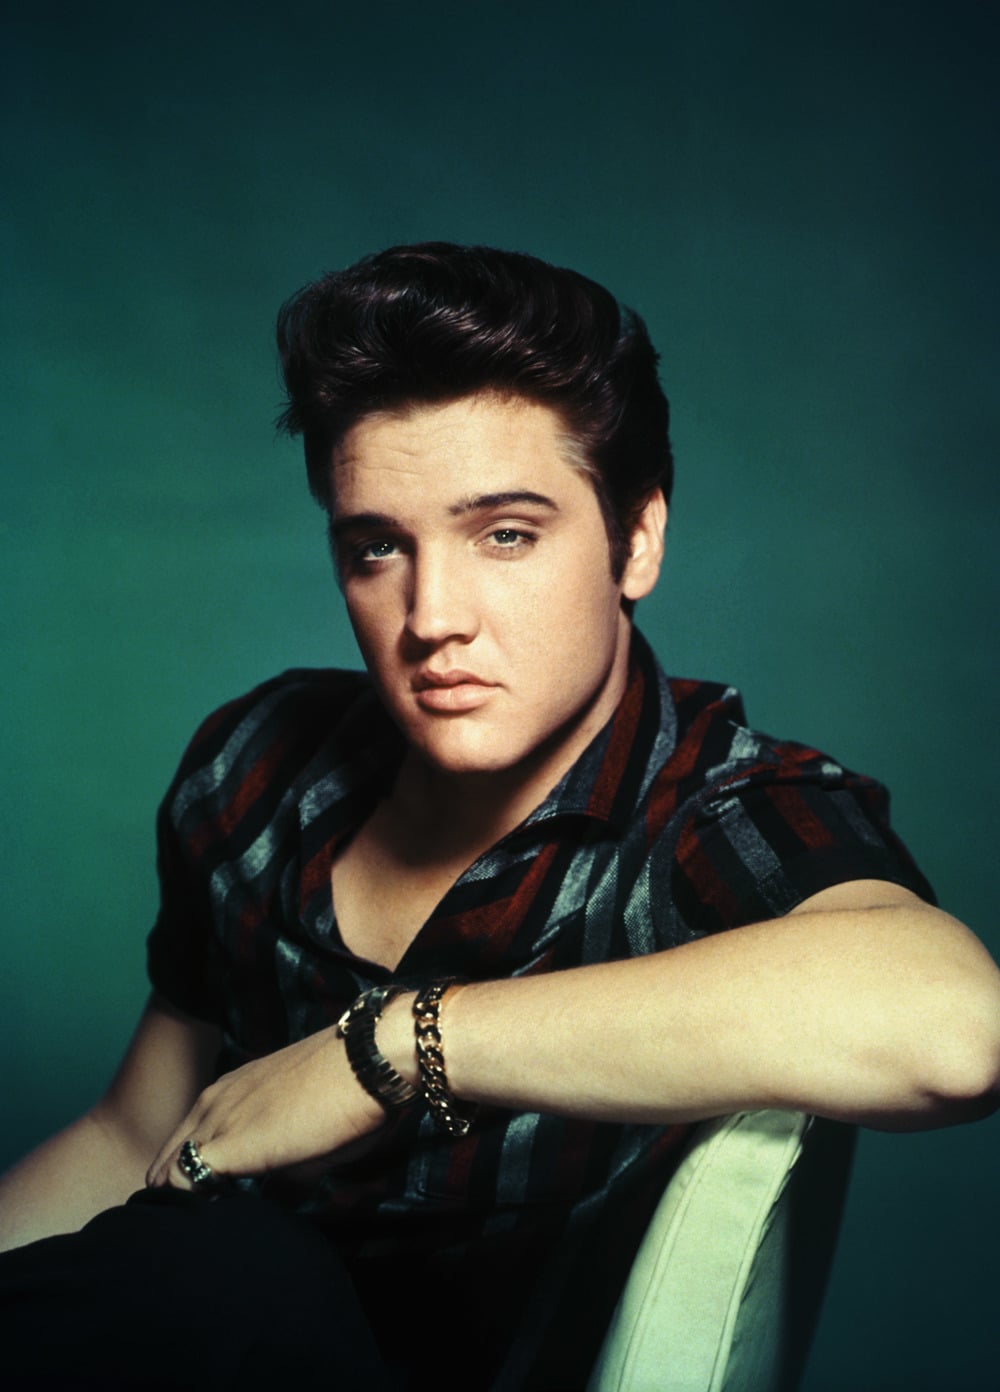 Studio Portrait of Elvis Presley